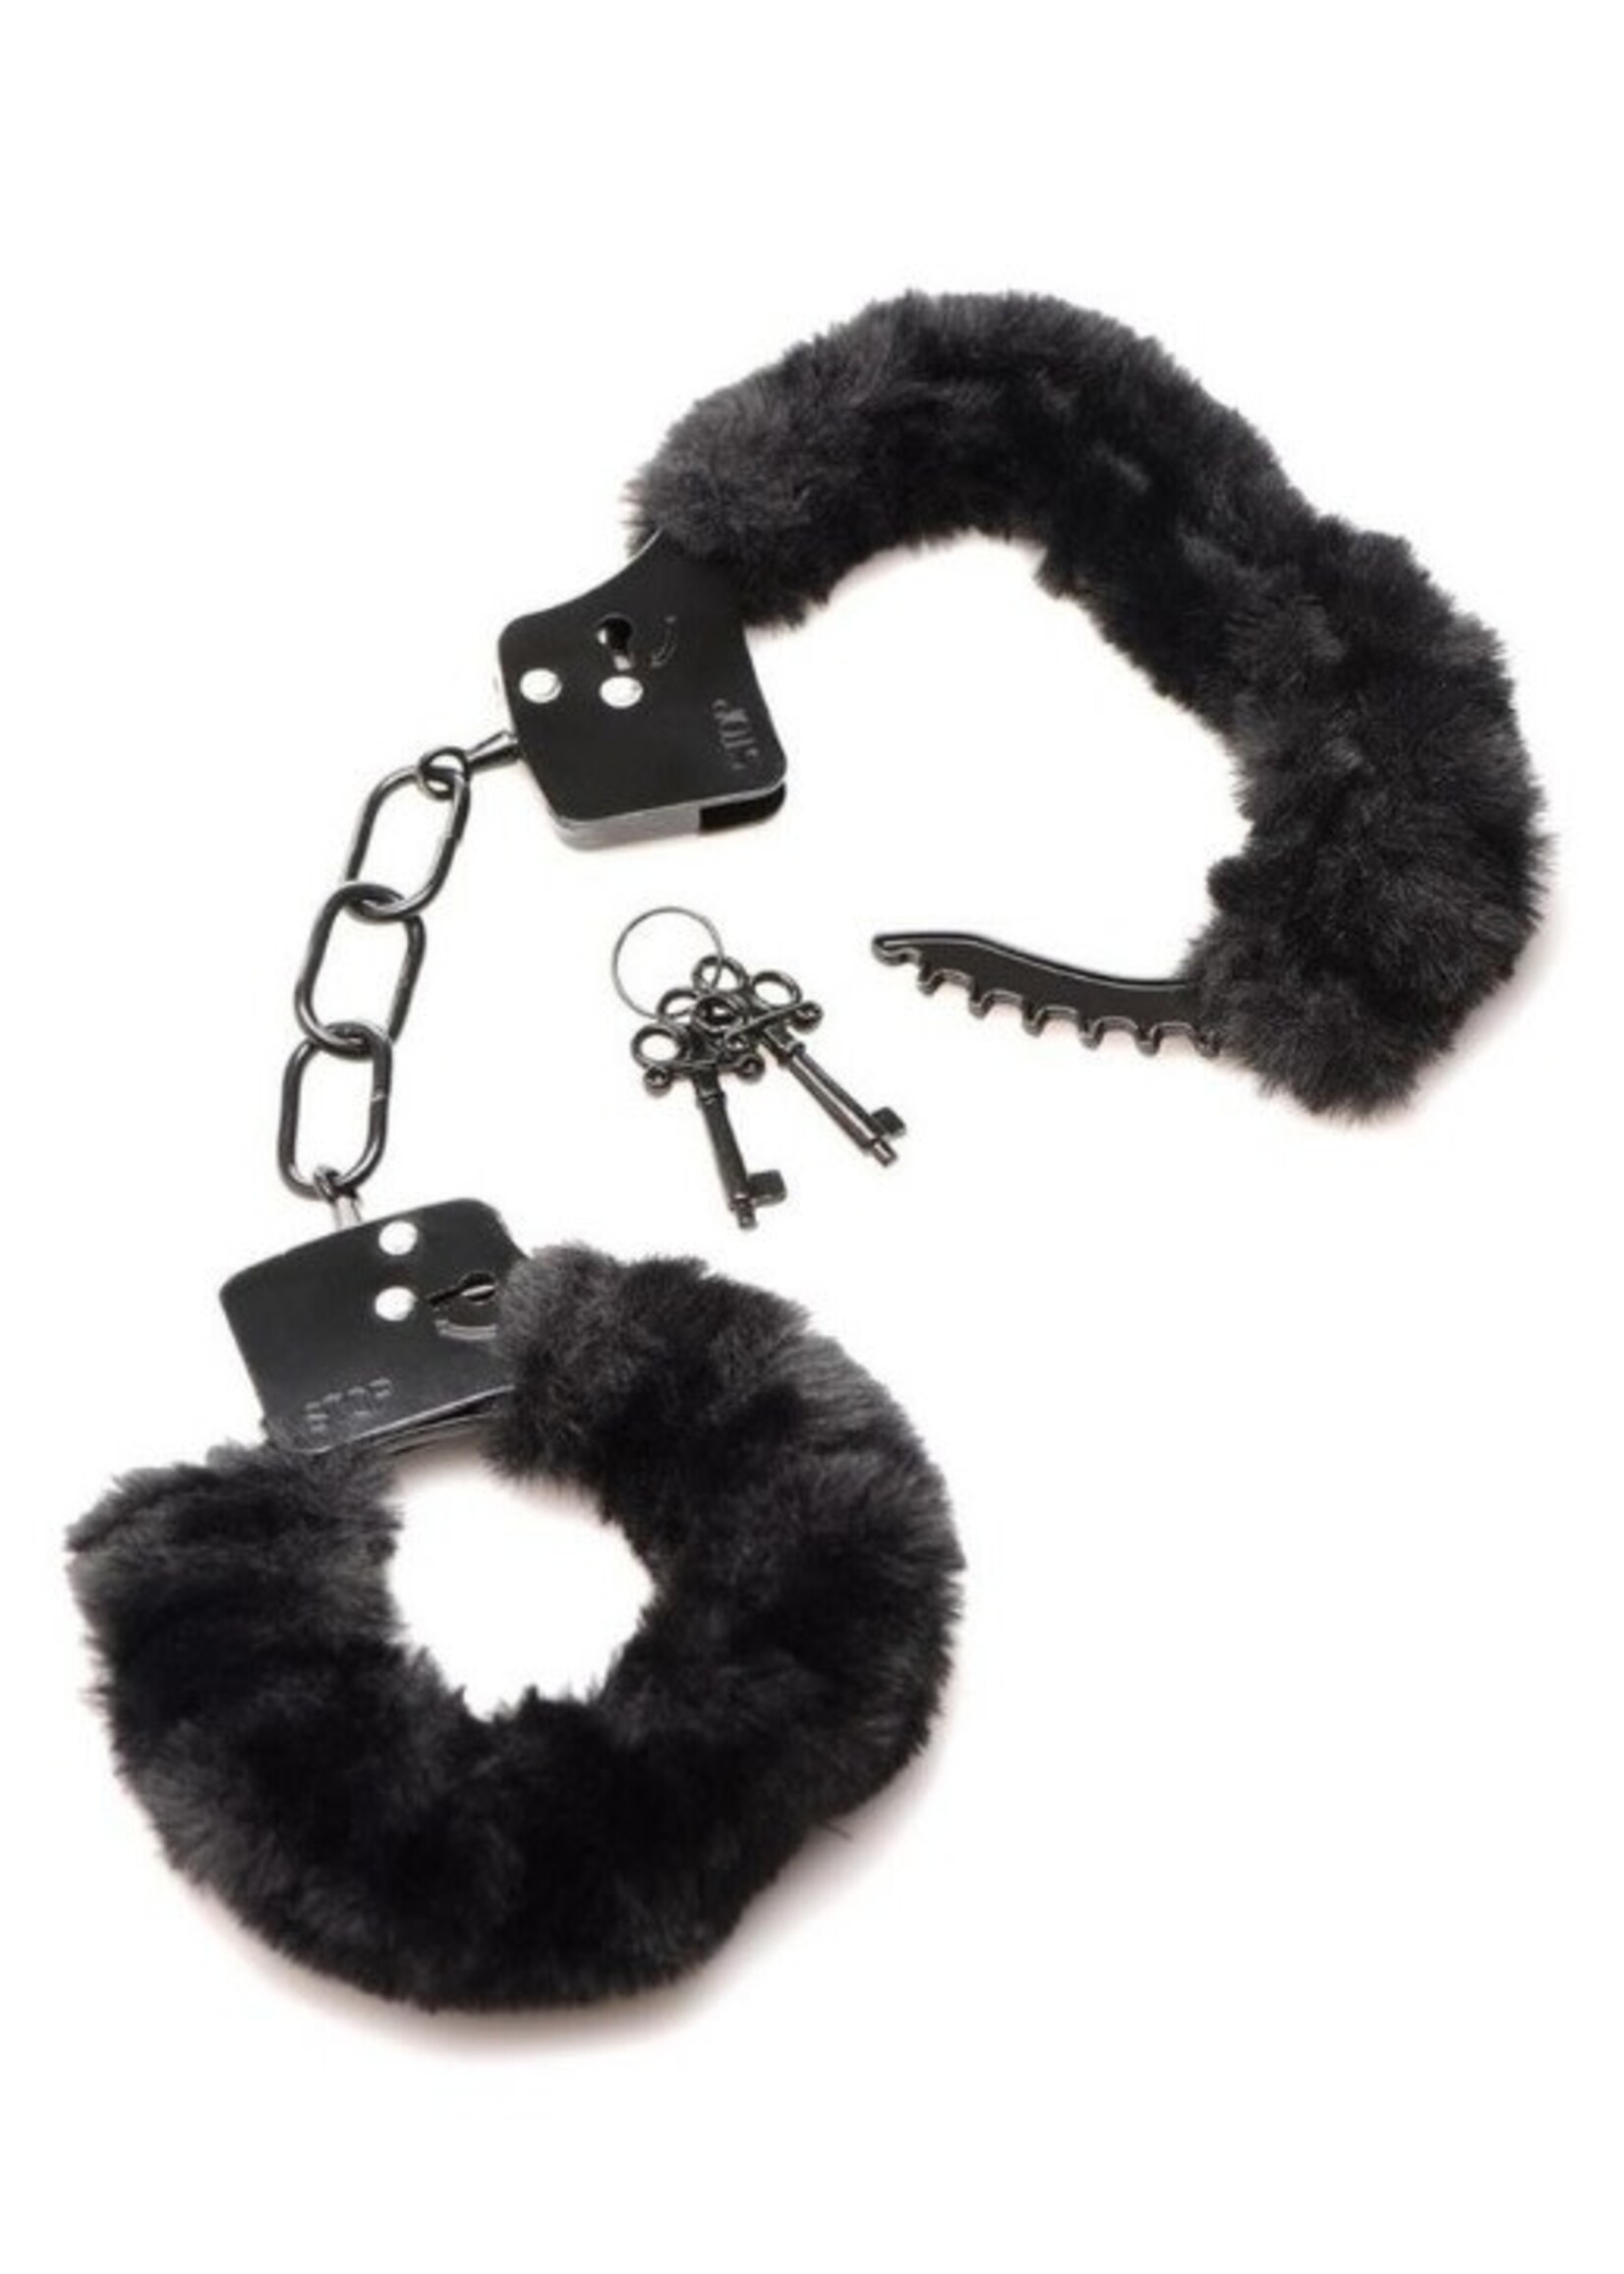 Master Series Cuffed in Fur Furry Handcuffs - Black